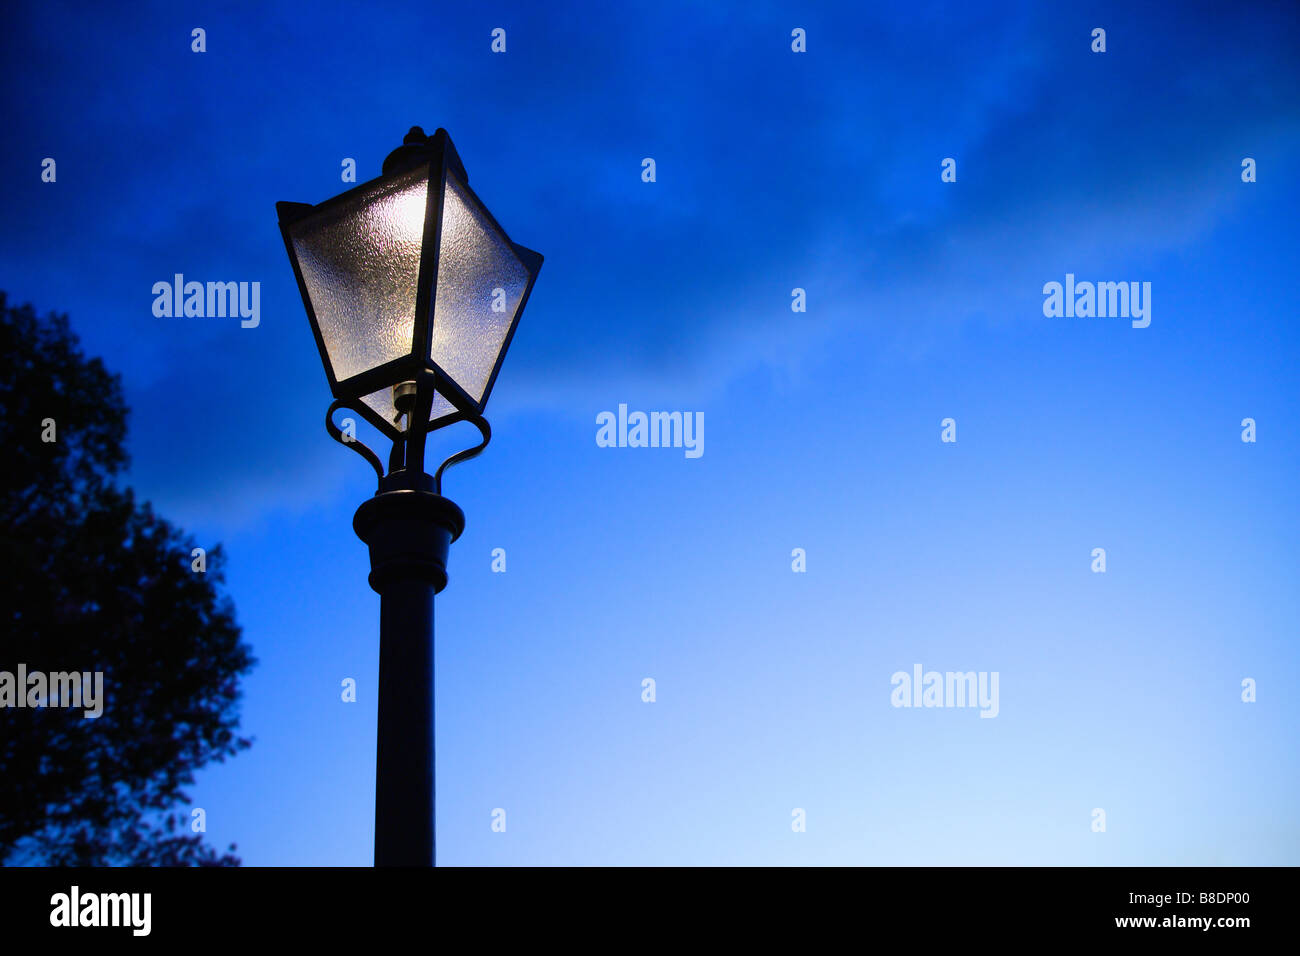 Illuminated street light Stock Photo